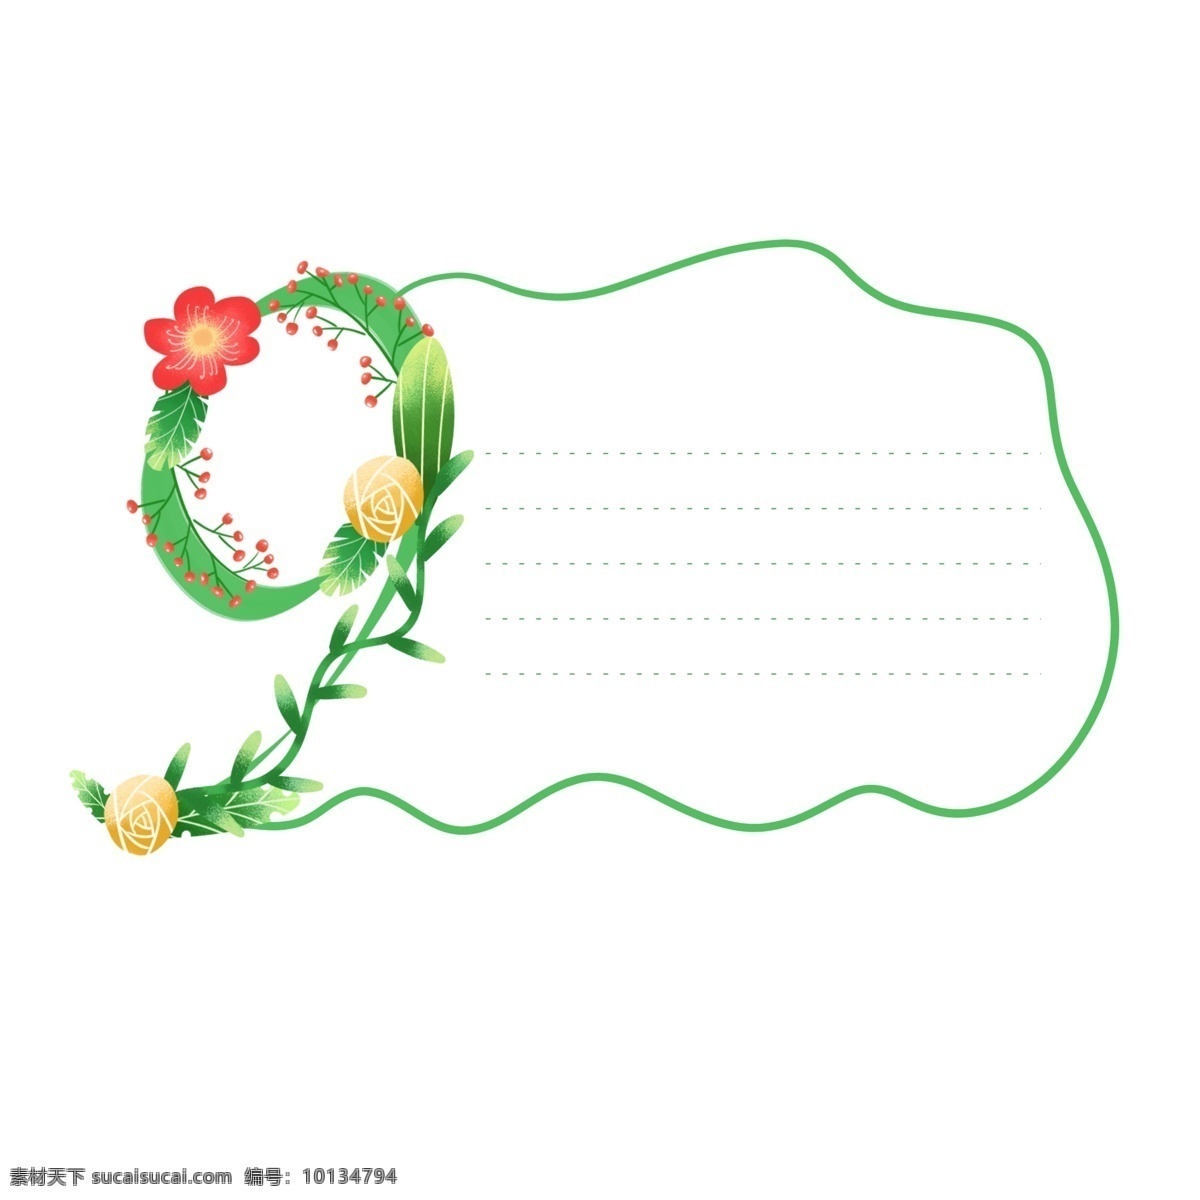 手绘 绿色 清新 数字 植物 鲜花 装饰 边框 元素 手绘植物 手绘鲜花 数字图案 数字9 手绘边框 边框元素 鲜花元素